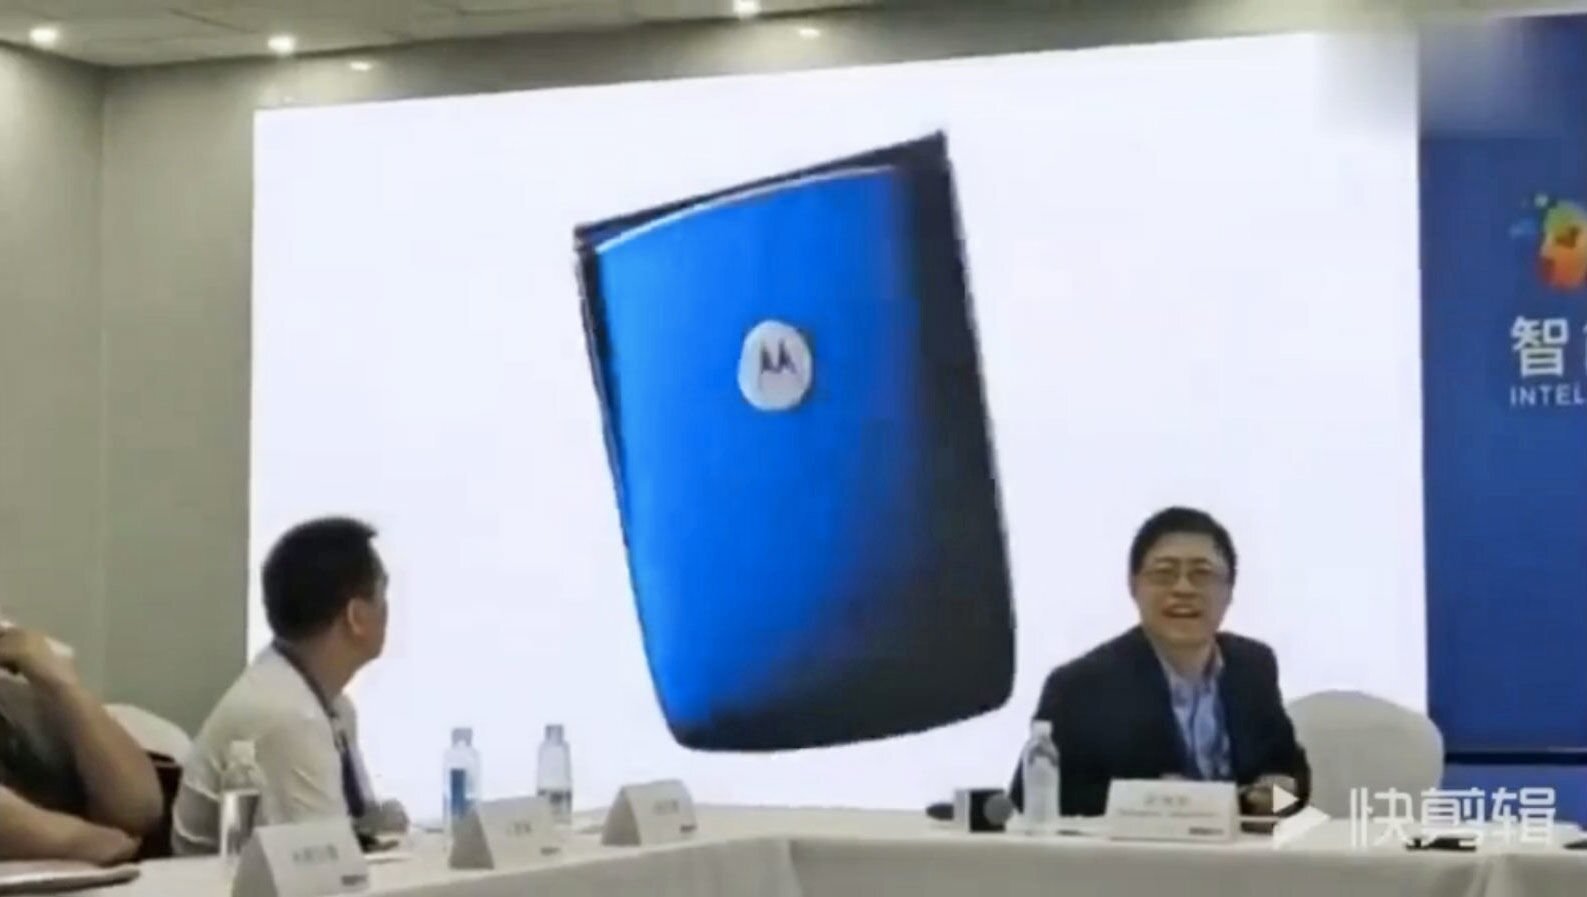 Η Lenovo «έκλεψε» concept video από έναν YouTuber για να διαφημίσει το αναδιπλούμενο Motorola RAZR